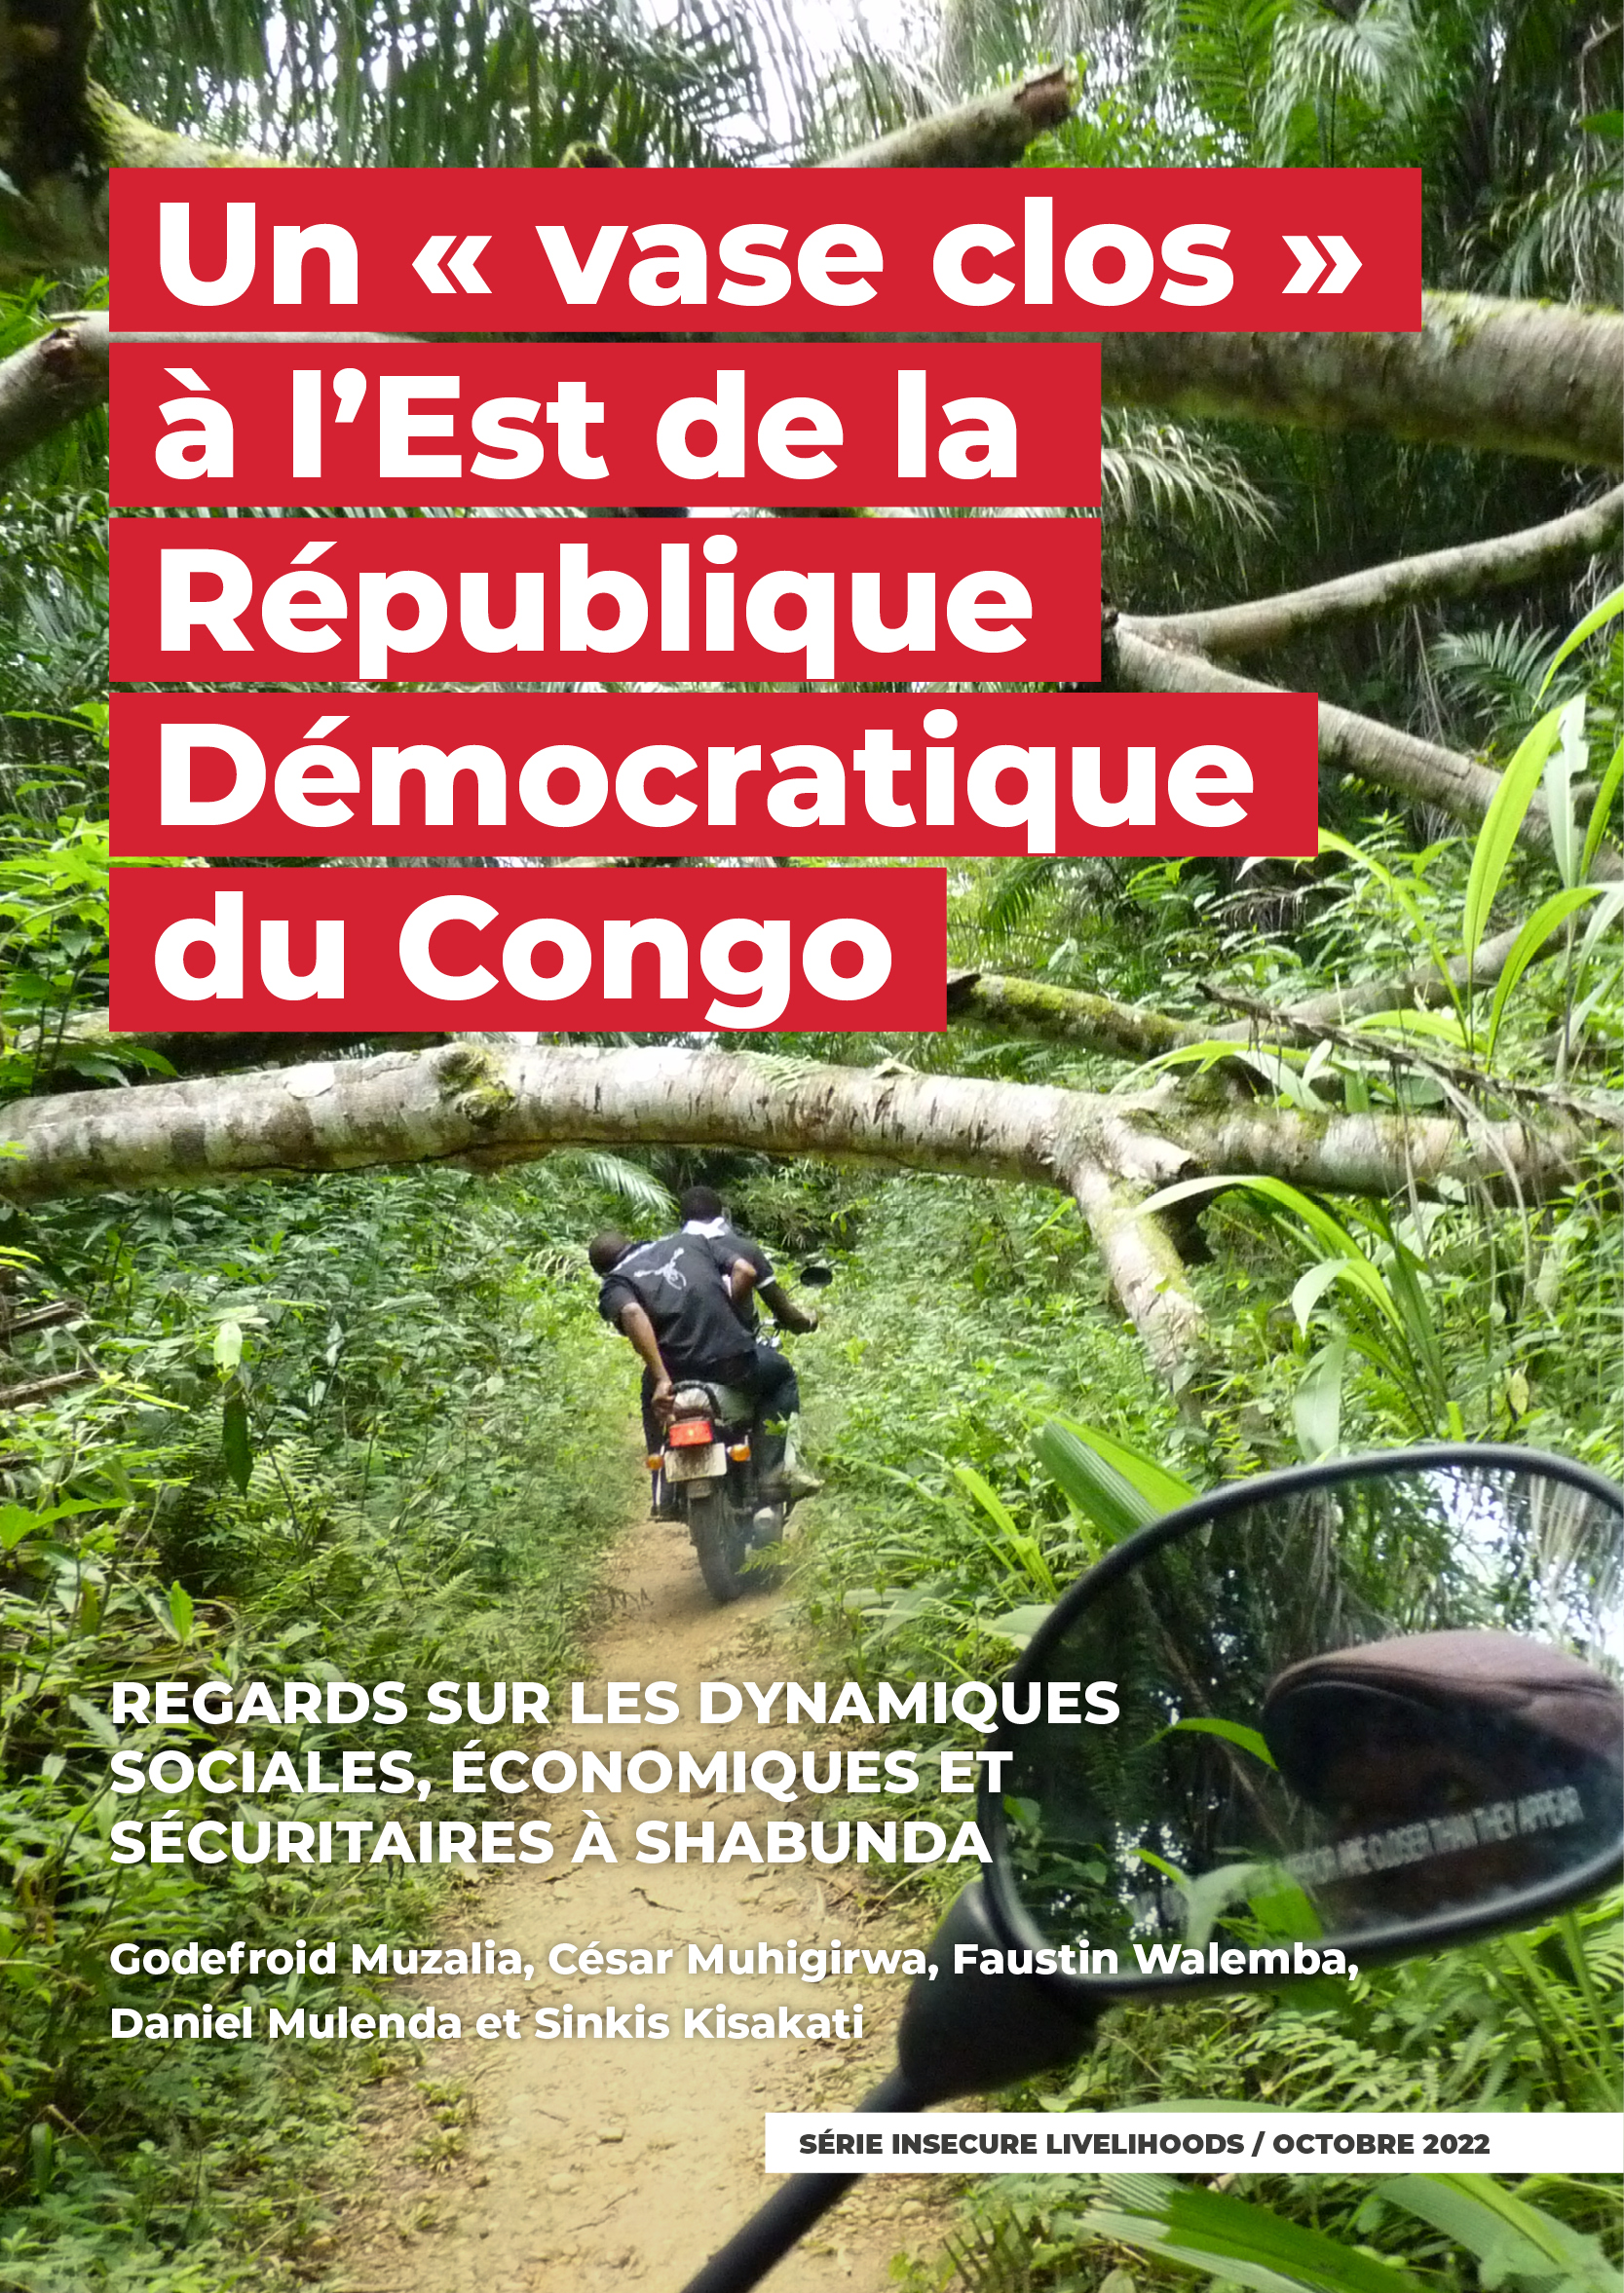 15_GIC_Un « vase clos » à l’Est de la République Démocratique du Congo_4